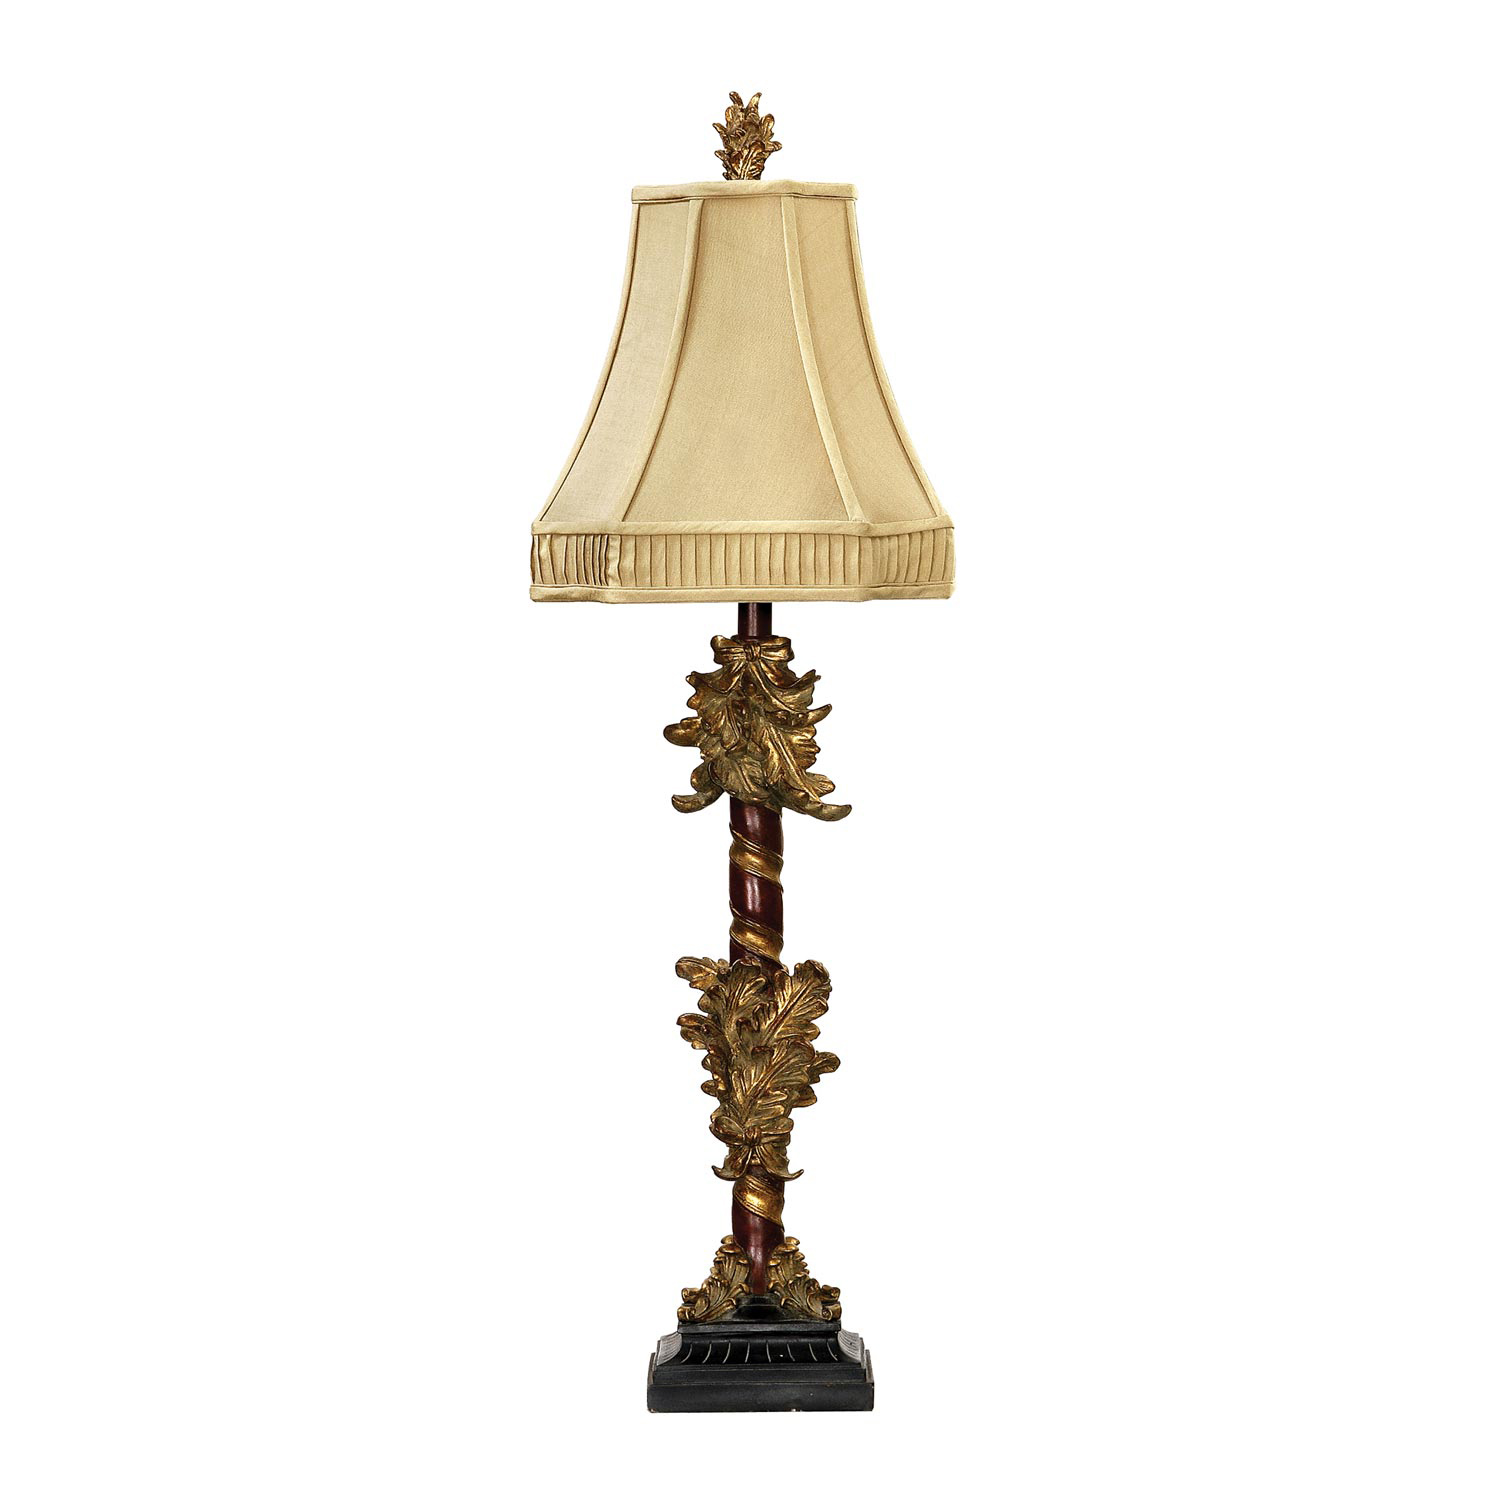 Elk Lighting 91-036 Leaf Cluster Candlestick Table Lamp - Gold Leaf / Black